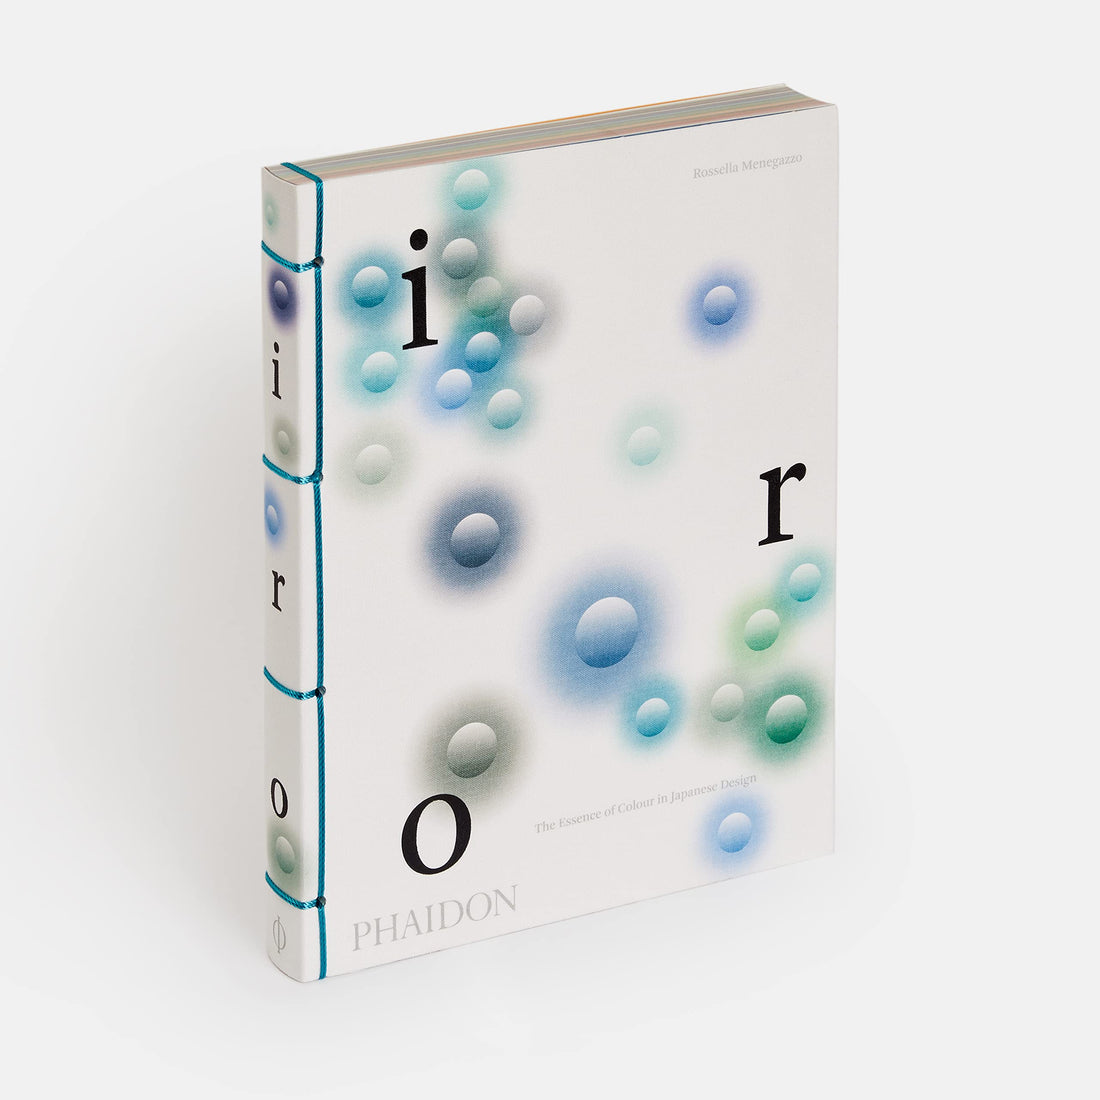 Iro: Esencja koloru w japońskim designie